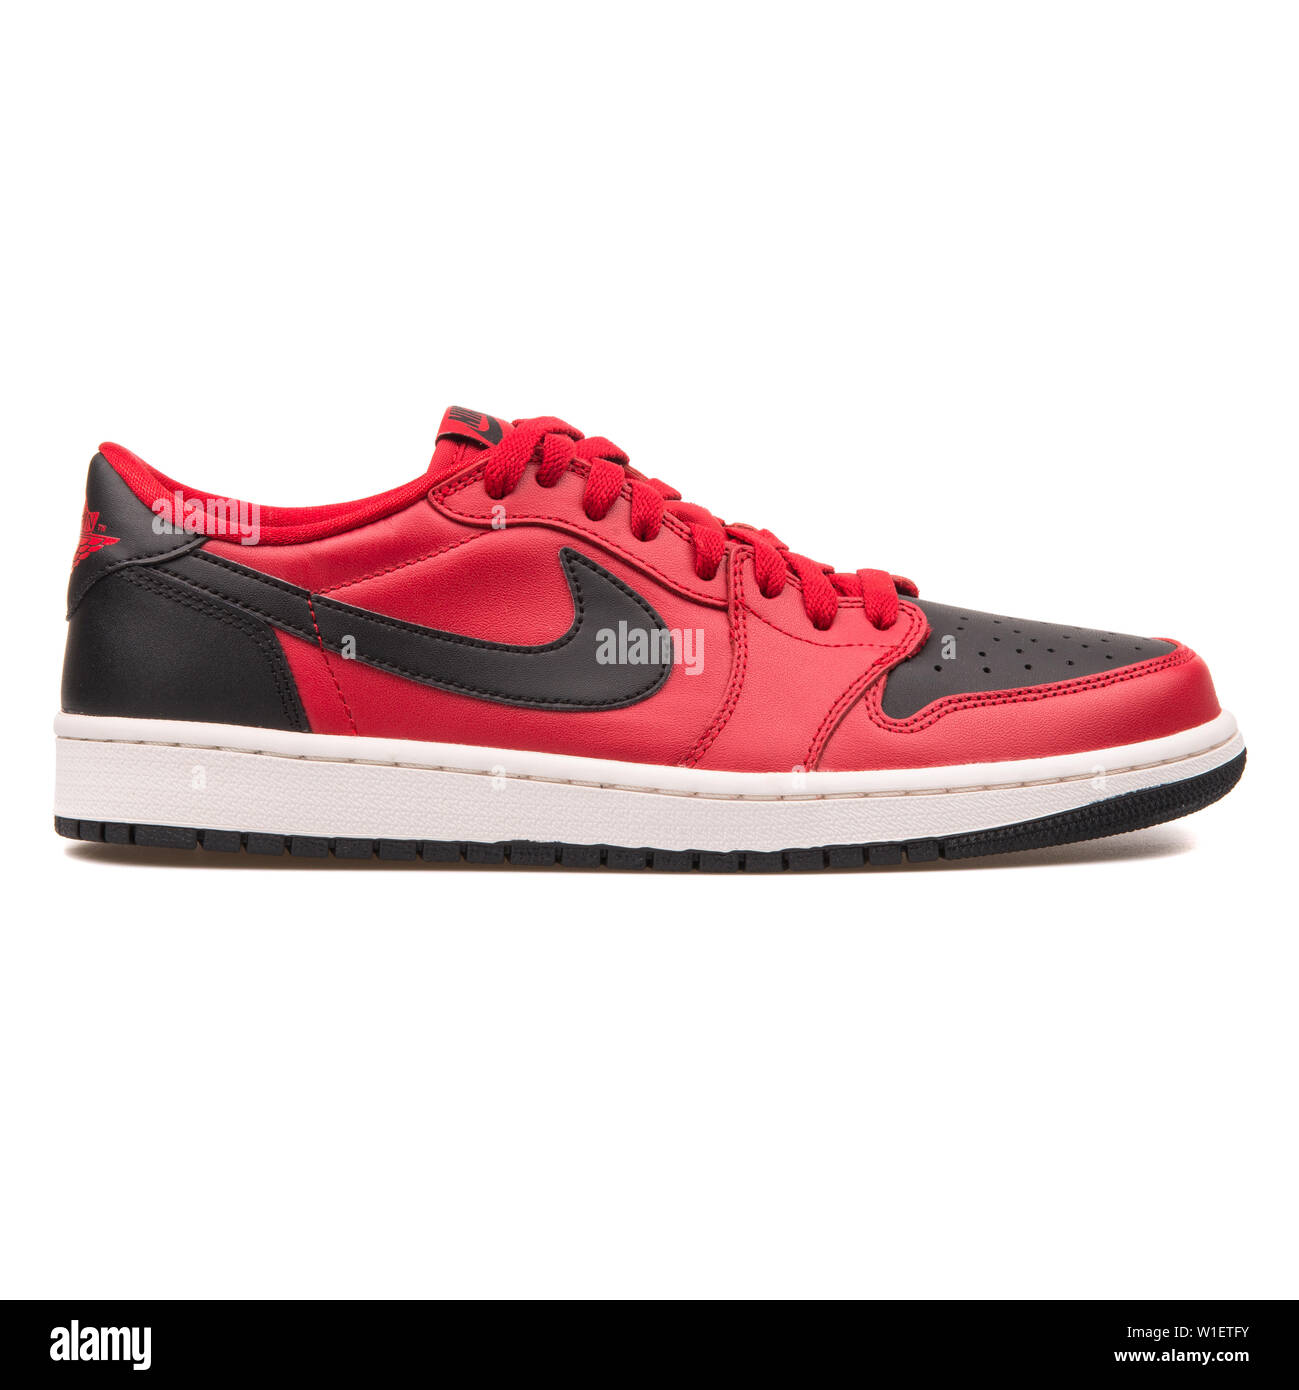 Vienne, Autriche - 10 août 2017 : Nike Air Jordan 1 Retro Low OG Exécuter  sneaker Ultra rouge et noir sur fond blanc Photo Stock - Alamy